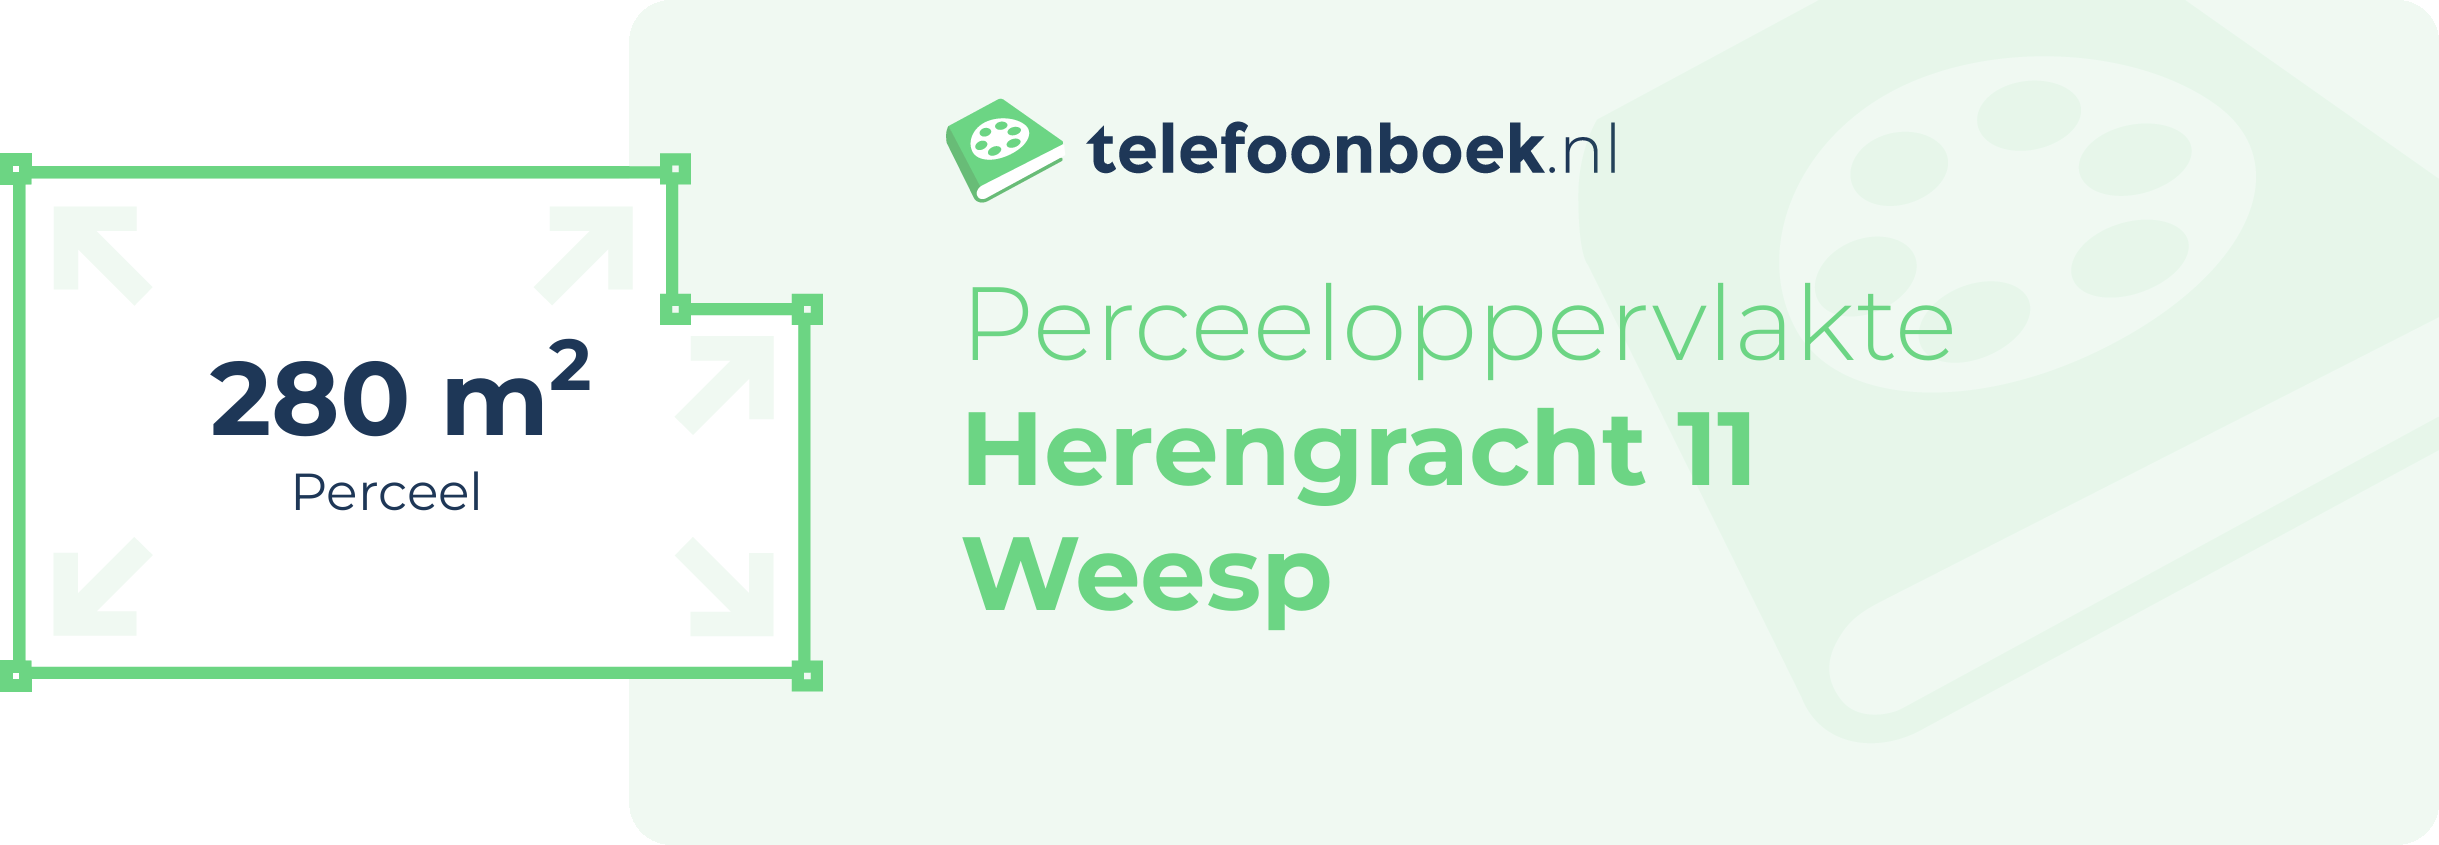 Perceeloppervlakte Herengracht 11 Weesp